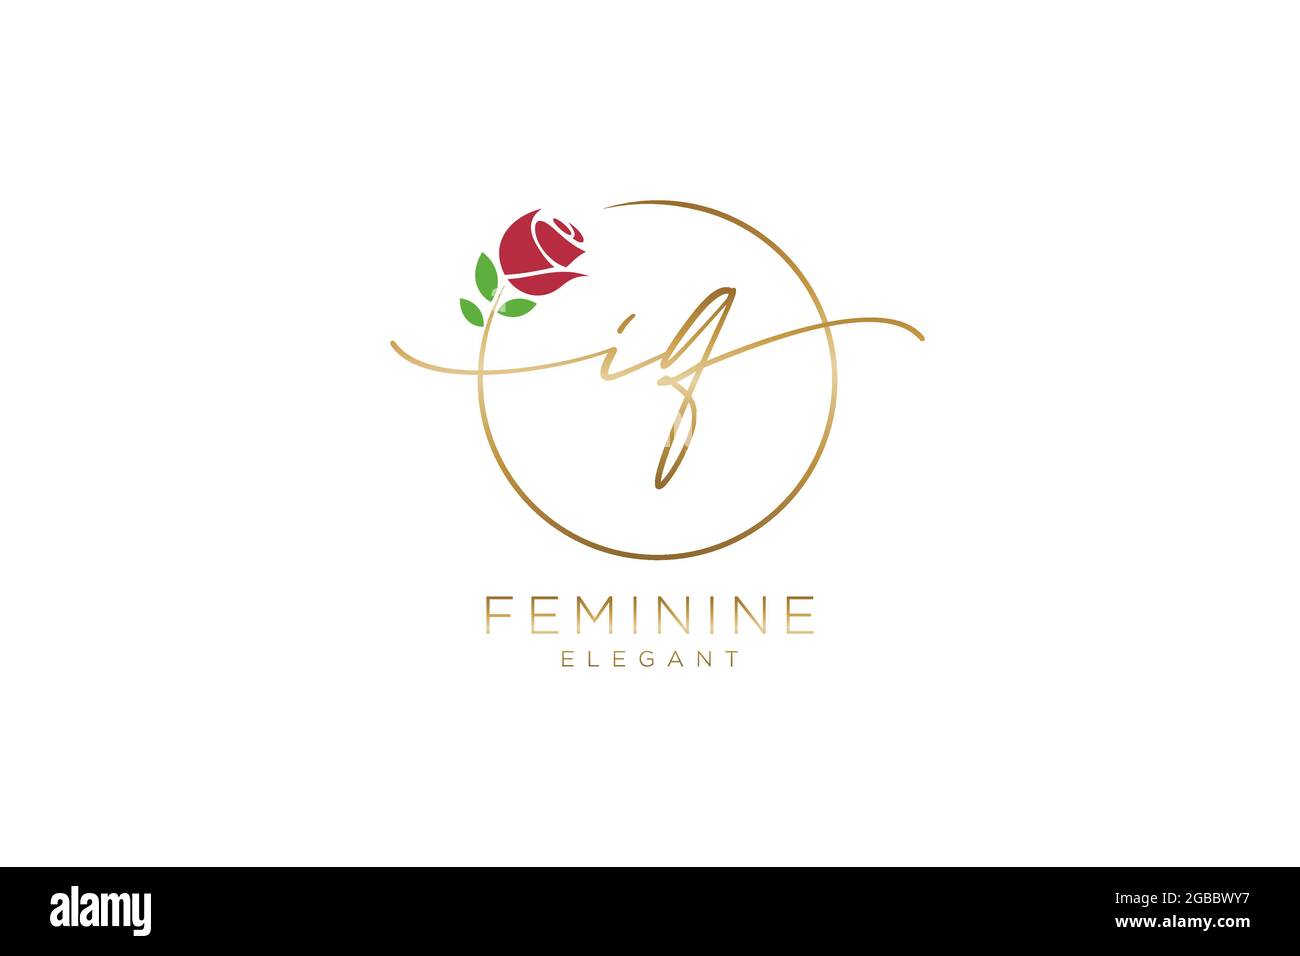 IQ Monogramma di bellezza del logo femminile e design elegante del logo, logo di scrittura a mano della firma iniziale, matrimonio, moda, floreale e botanico con creativo Illustrazione Vettoriale